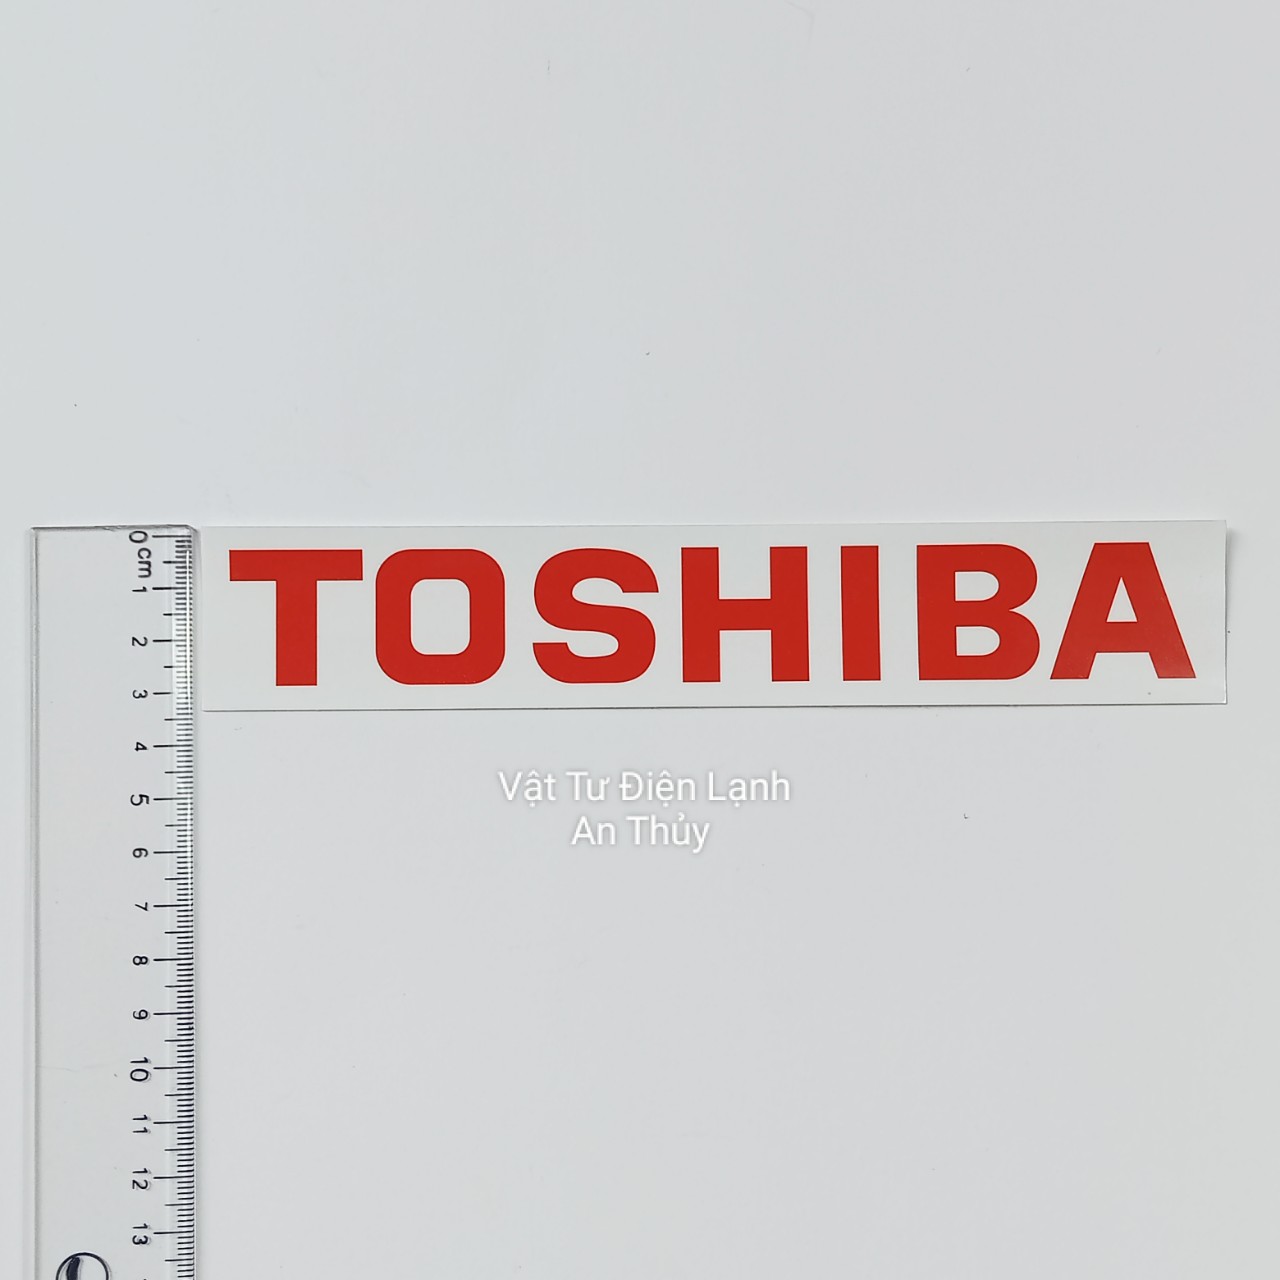 Combo 10 tem cho TOSHIBA mẫu to dán đuôi cục nóng - Tem dán cục nóng - Tem trang trí cục nóng - Tem đuôi nóng máy lạnh